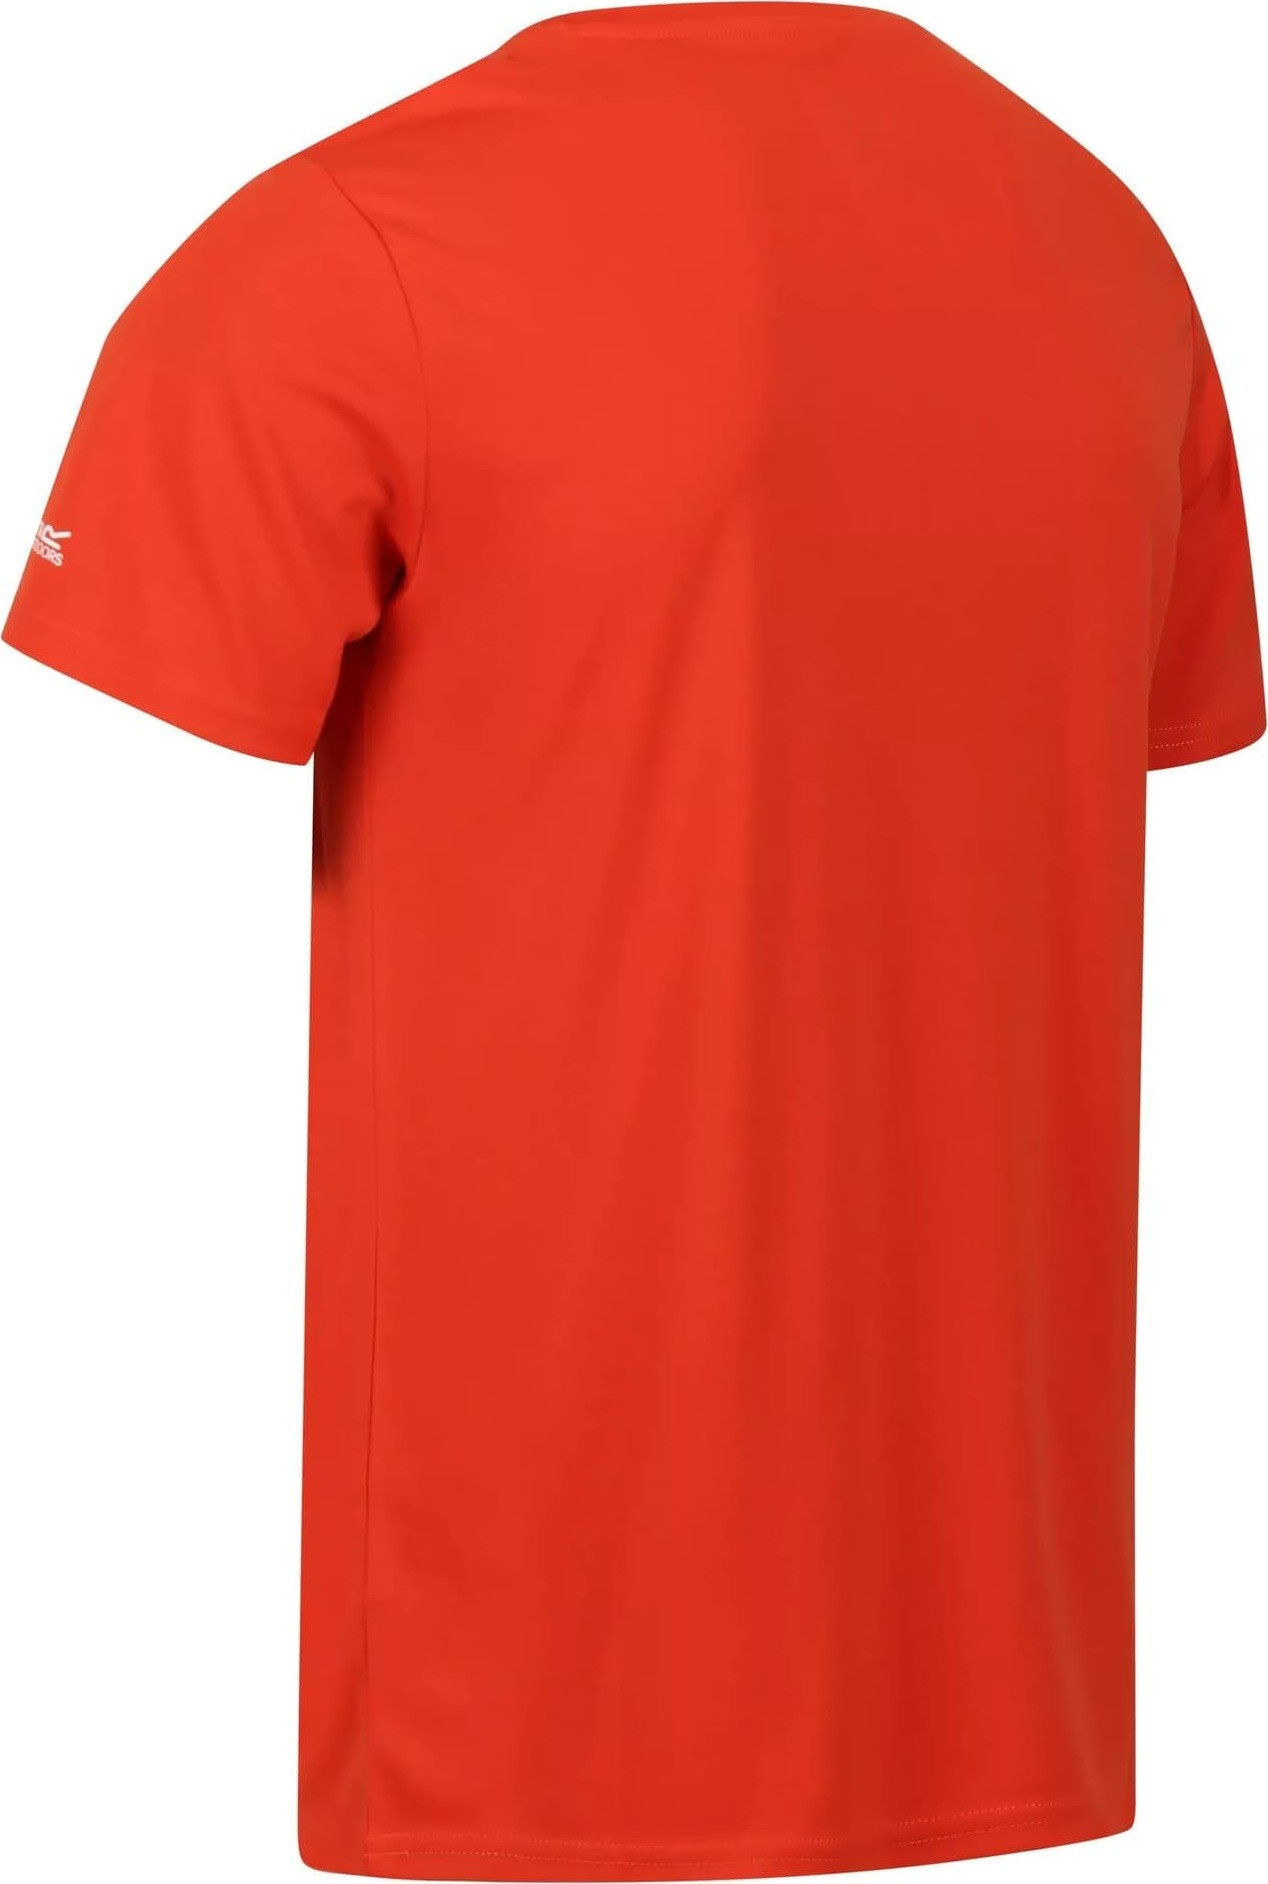 Pánské tričko Regatta Fingal VII RMT272-33L oranžové Oranžová L